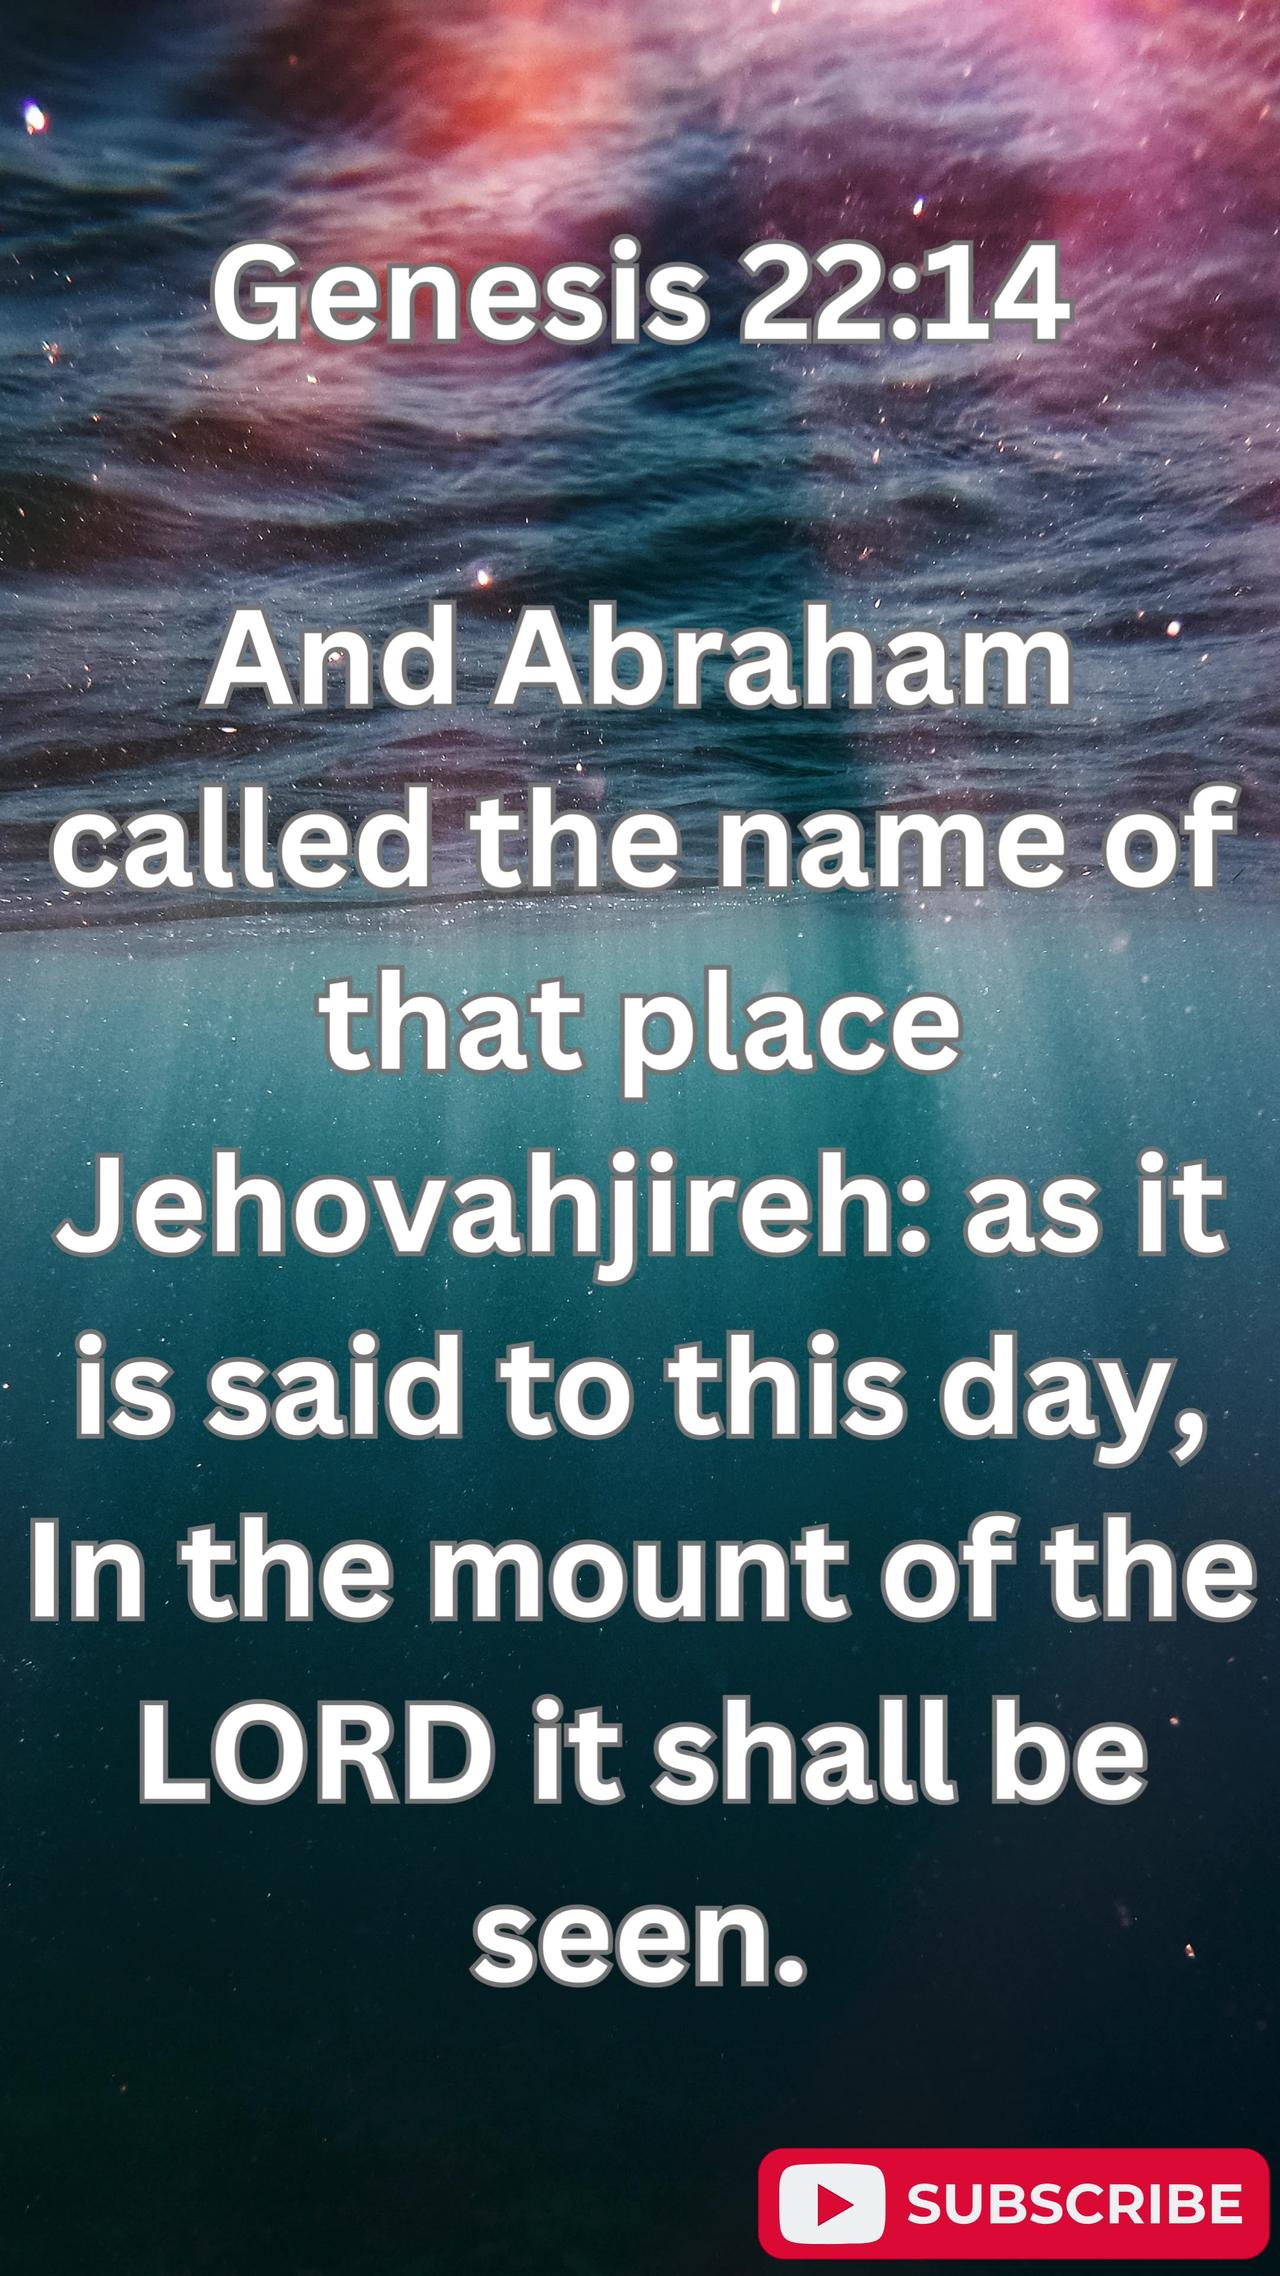 "Jehovah-Jireh: Genesis 22:14"